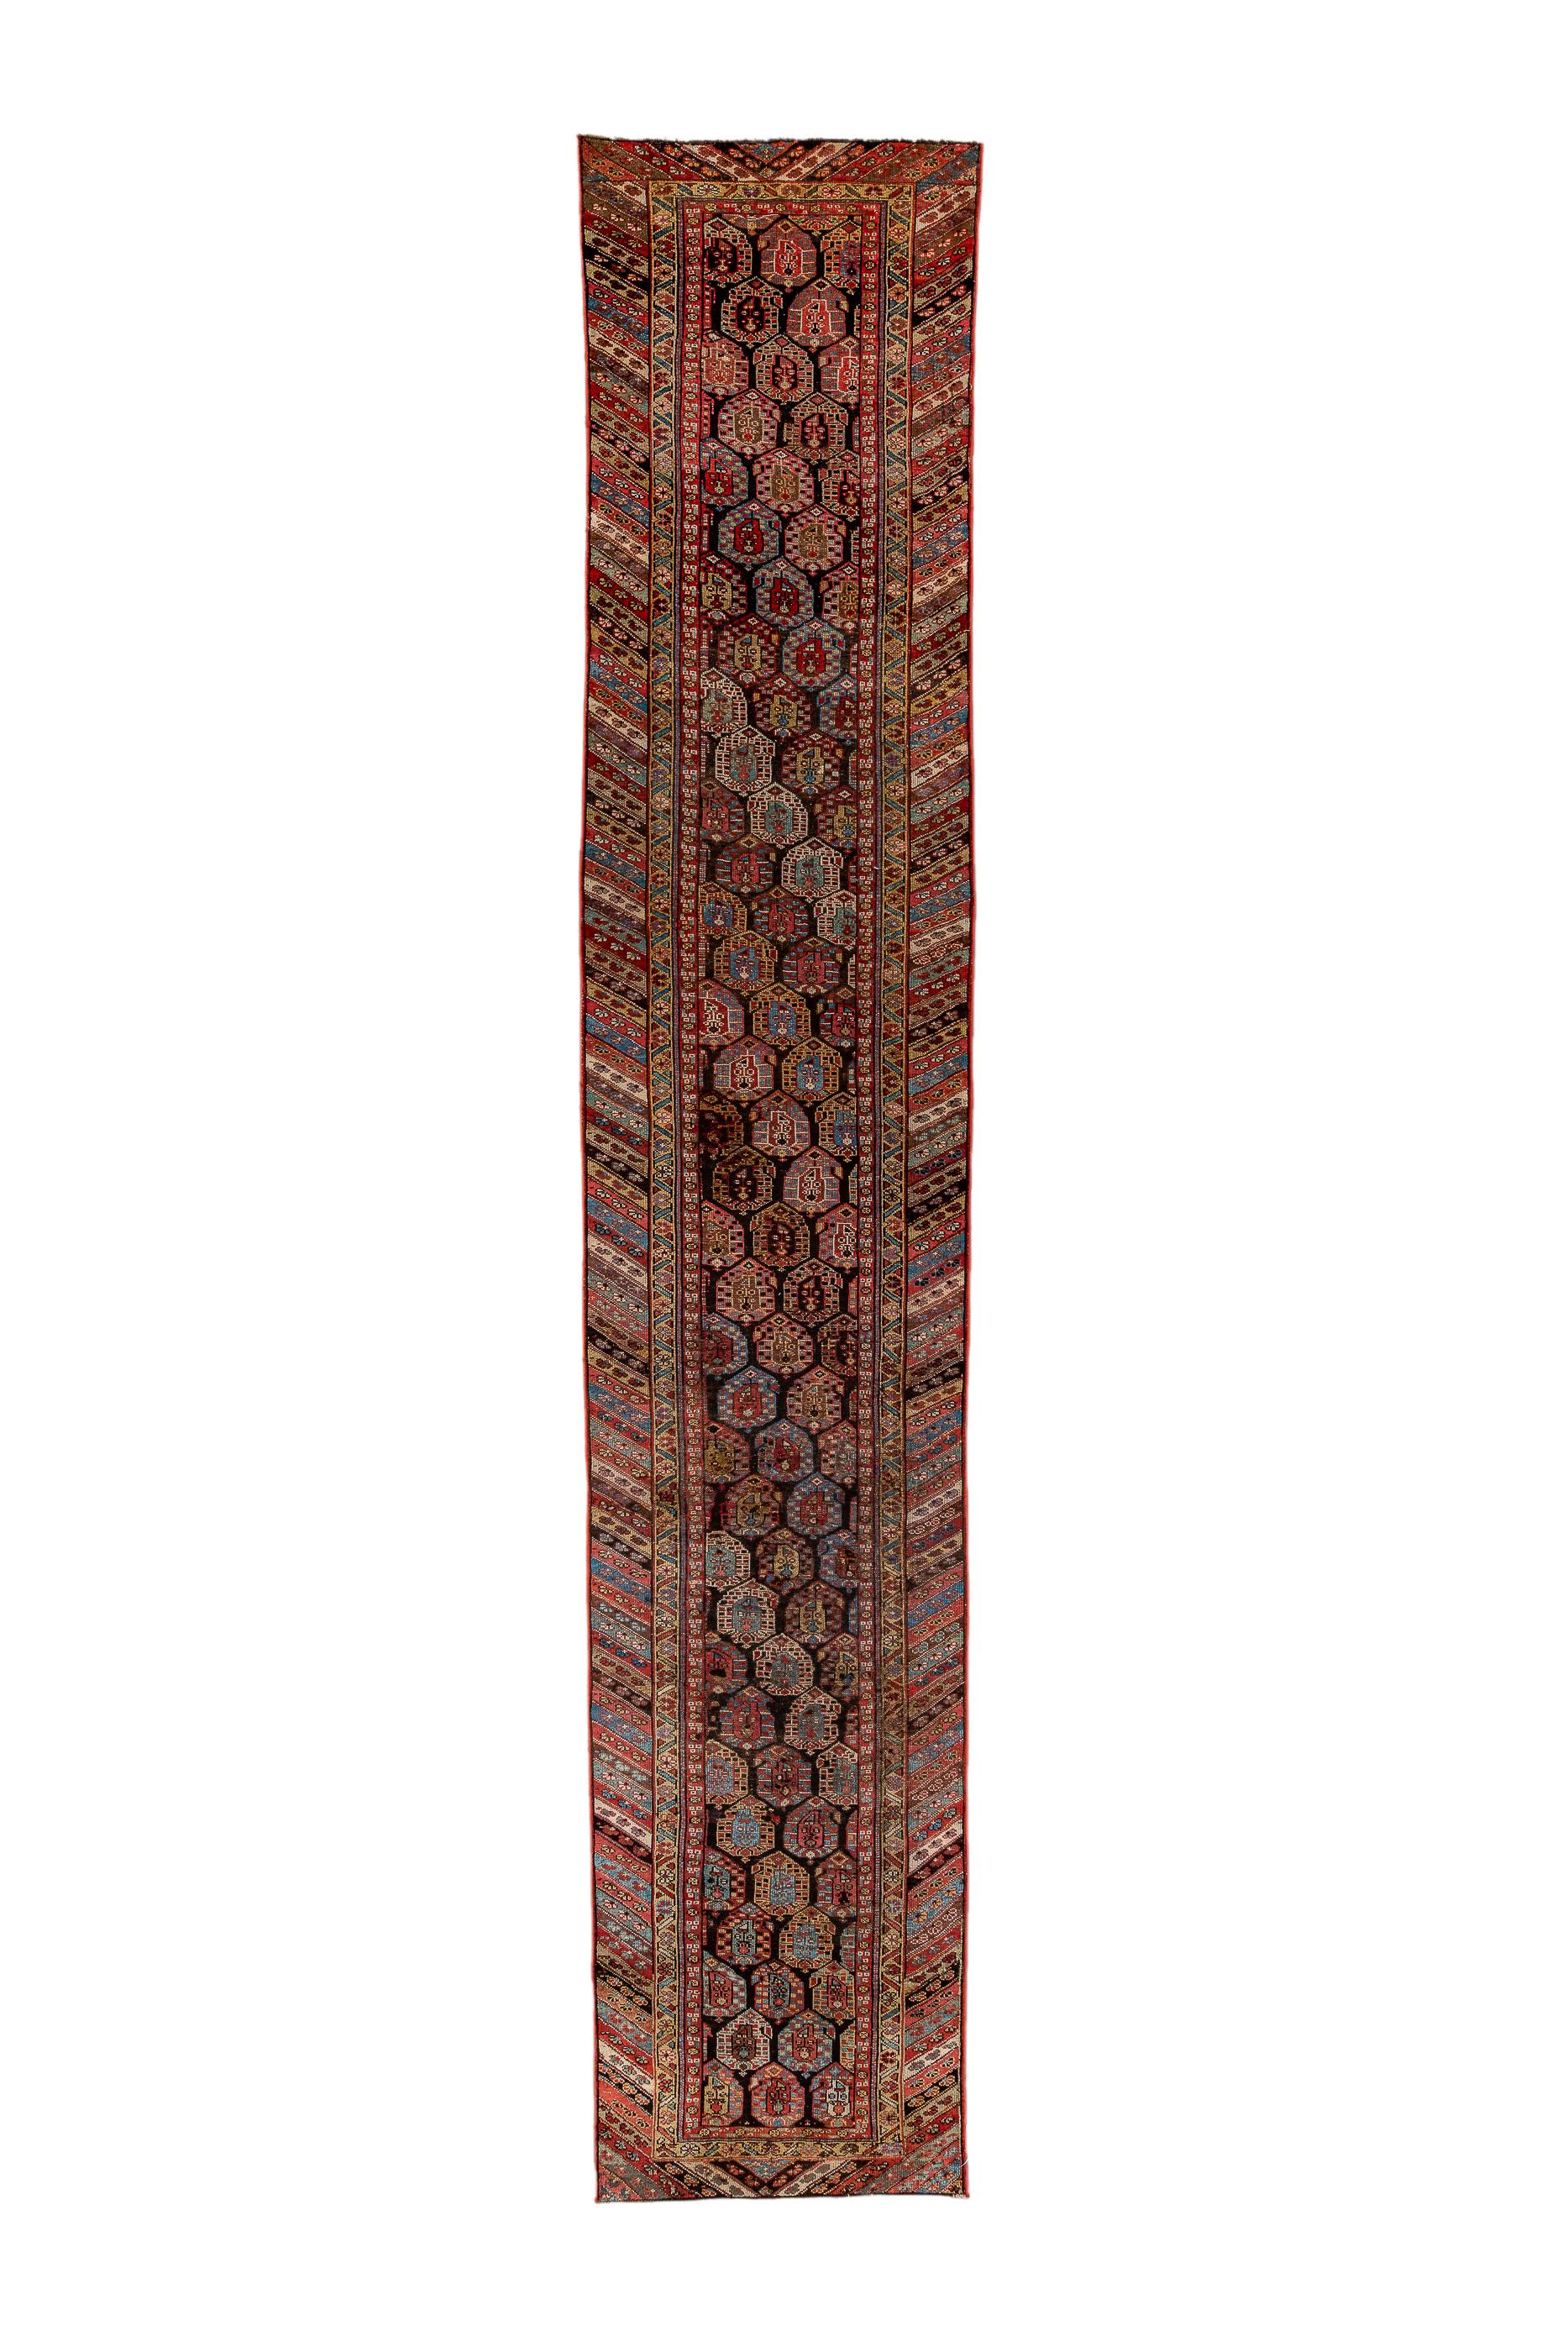 Das fast schwarze Feld zeigt kurze, sich umkehrende Reihen von bunten, geblümten Botehs in einer 2/ 1 plus zwei Hälften halben Tropfen versetzten Reihenfolge. Die Hauptbordüre zeigt diagonale Farbstreifen in Stroh,  hellblau, rot, korallenrot und